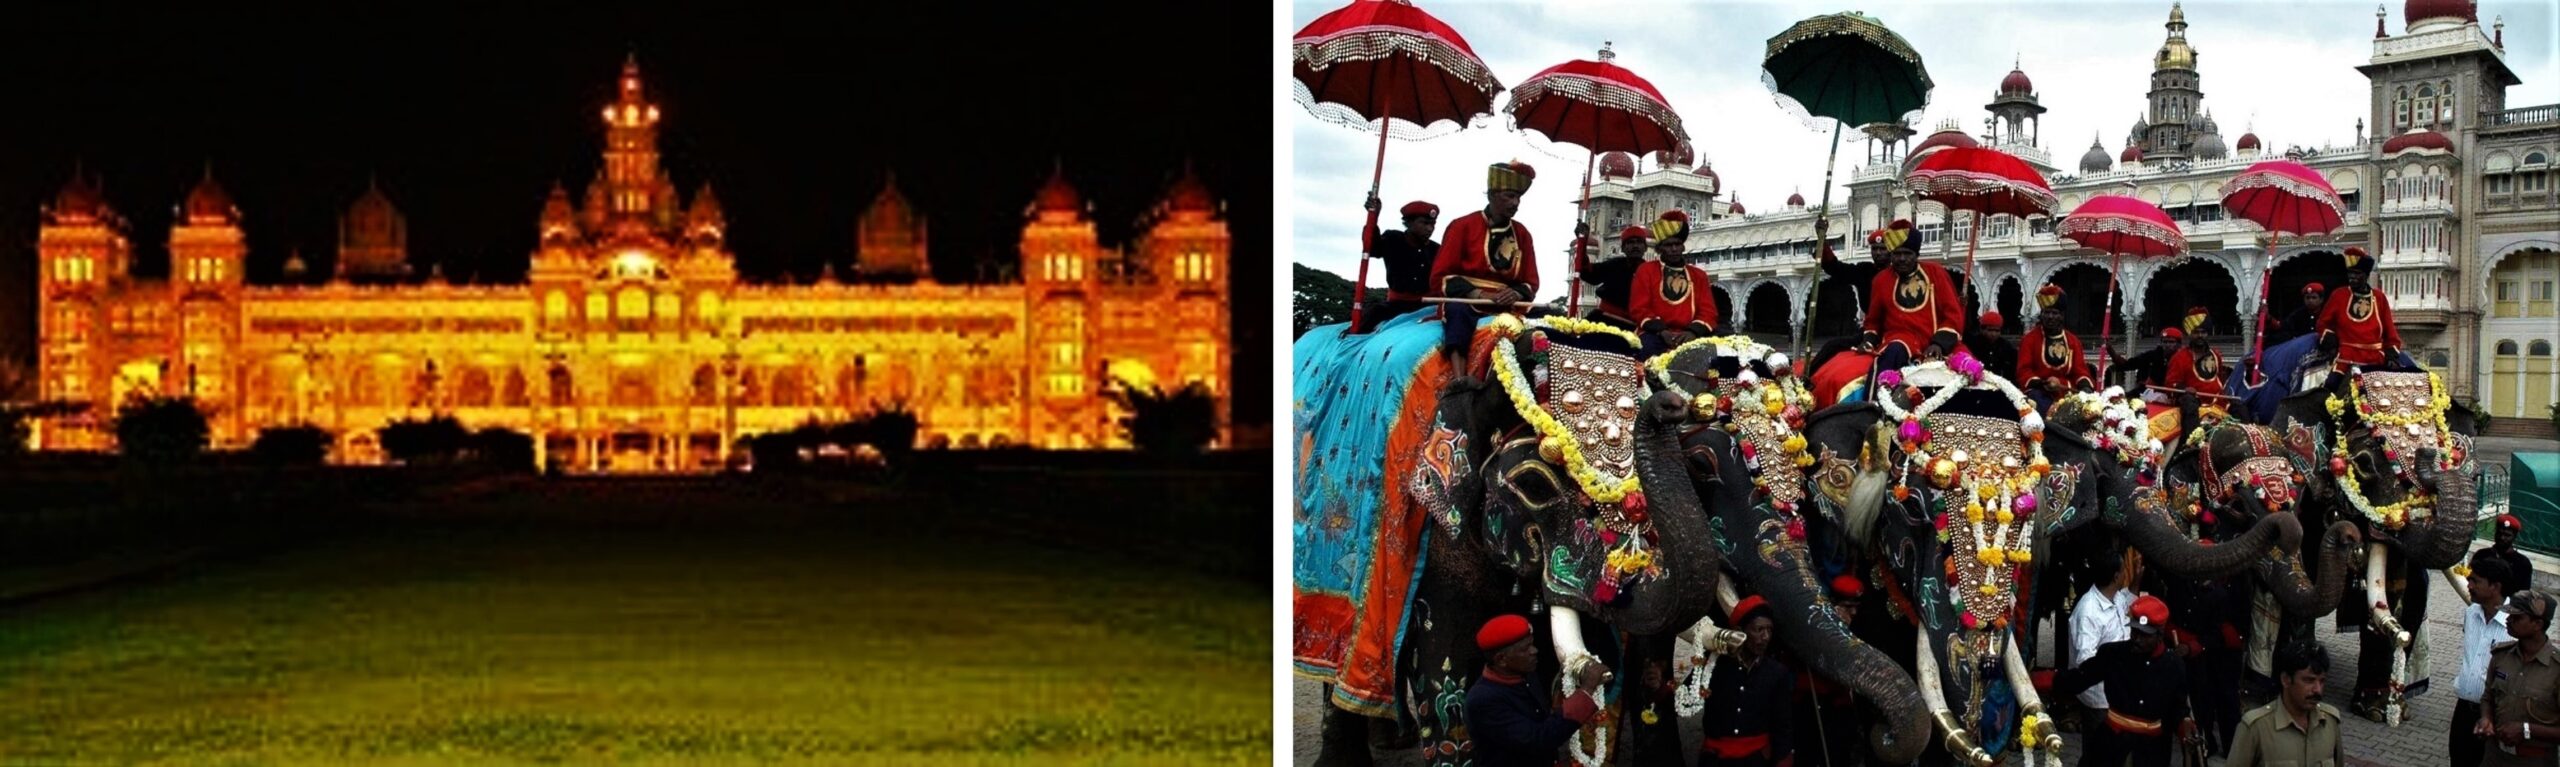 Left: Mysore Palace illuminated during Dussehra | PC - Wikipedia, Right: Procession of Elephants | PC - travelogyindia.com